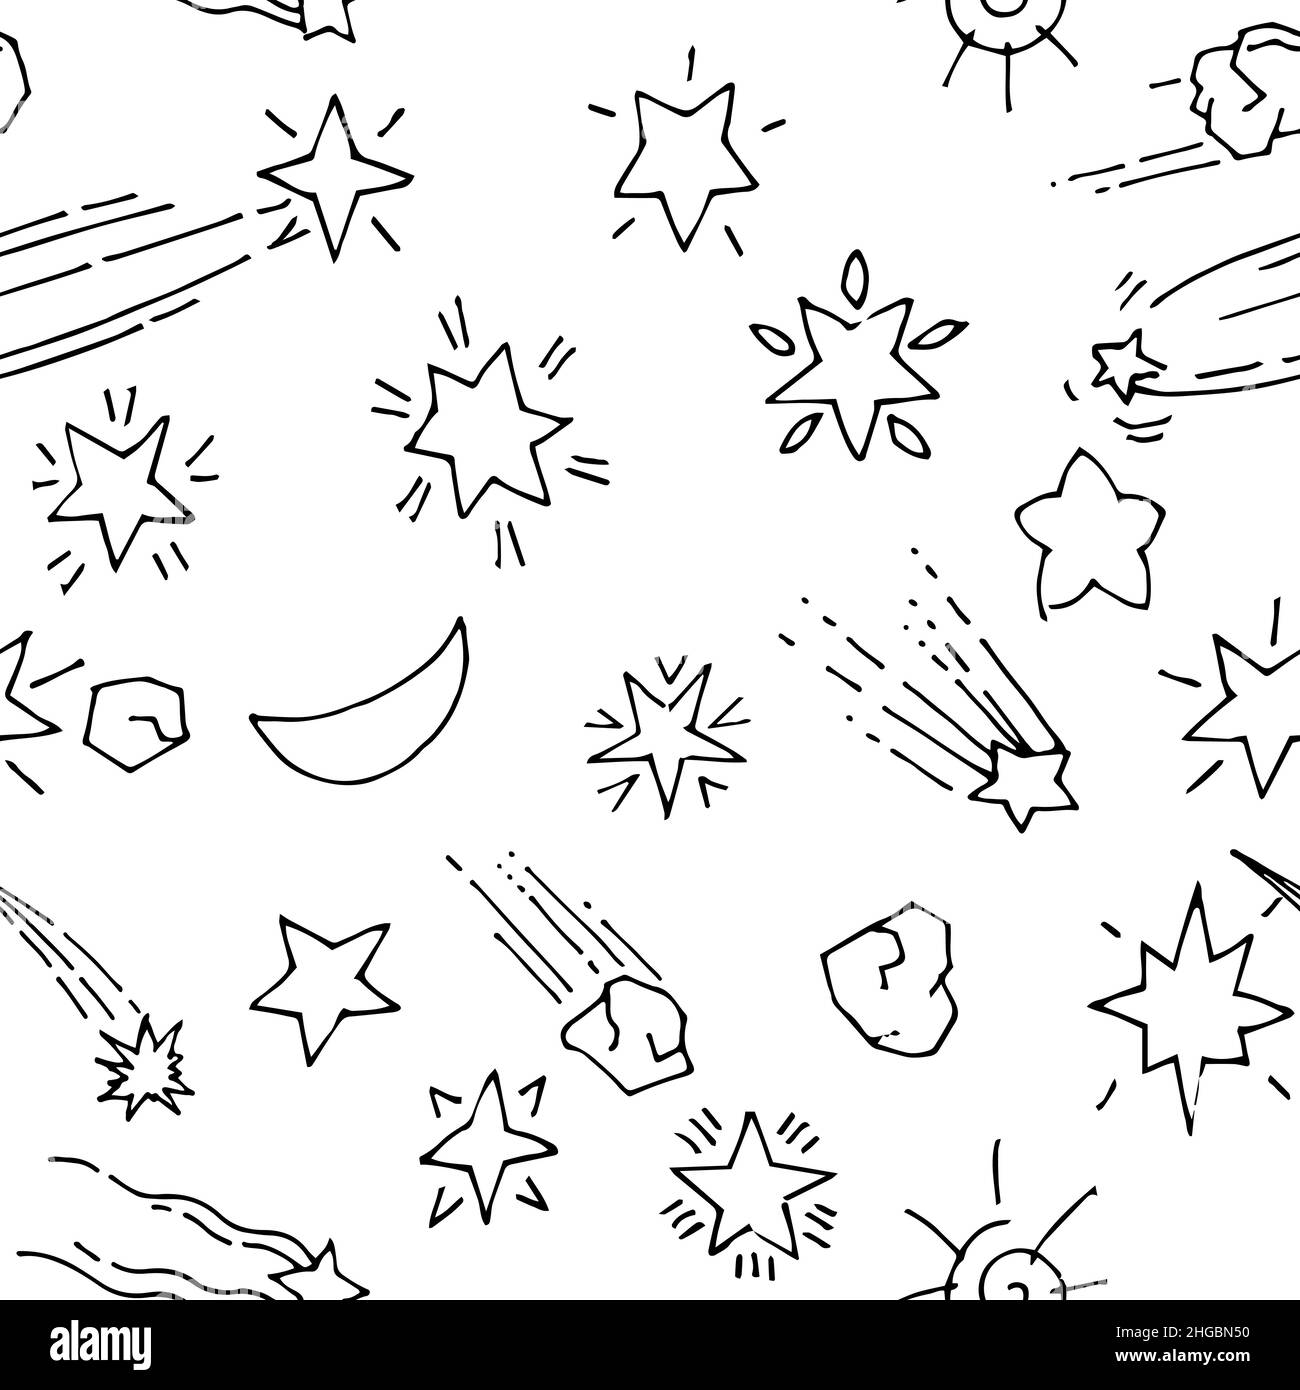 Leerraum im Hintergrund. Nahtloses Muster. Planeten und Sterne. Schönes Weltraumobjekt. Einfache Doodle-Zeichnung im kindischen Stil. Skizze umreißen. Handzeichnung Stock Vektor